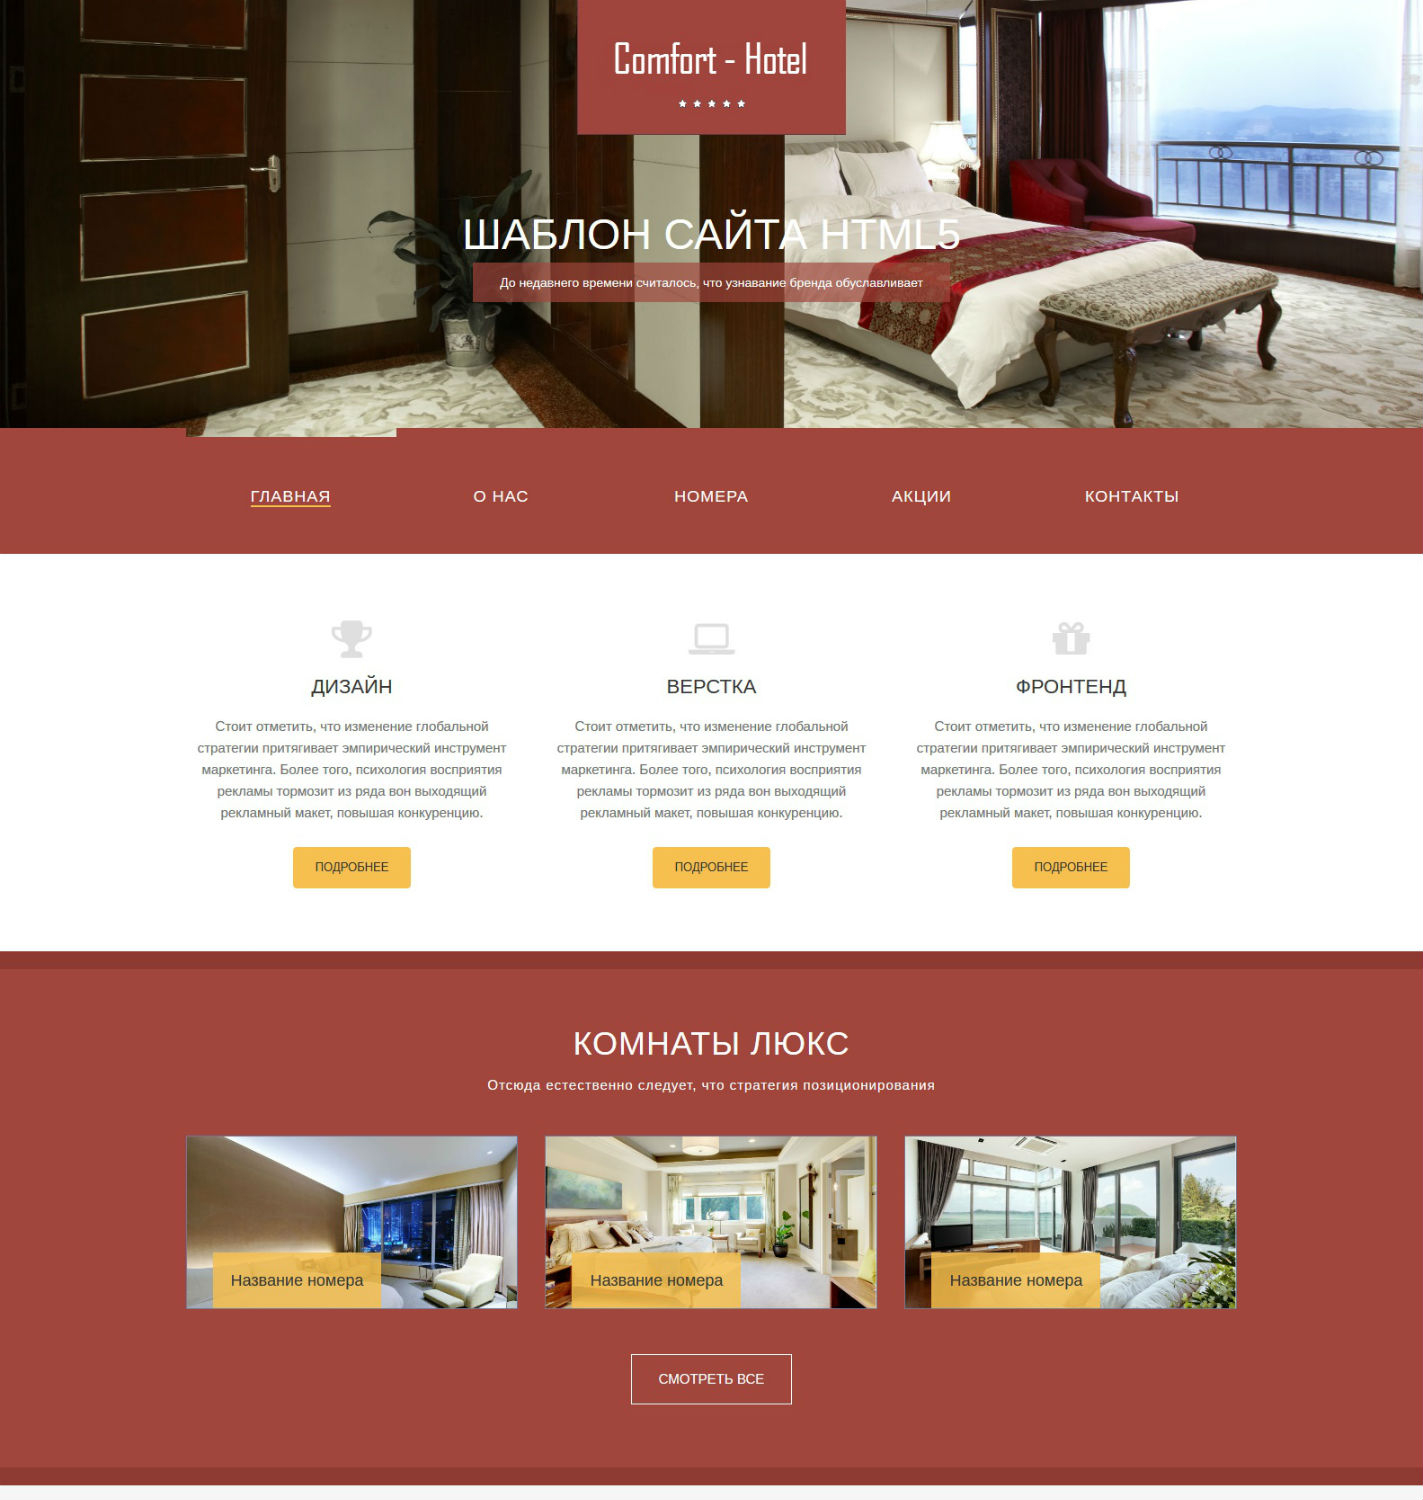 Hotel site. Шаблон сайта. Макет сайта гостиницы. Дизайн сайта шаблоны. Оформление сайта для гостиницы.